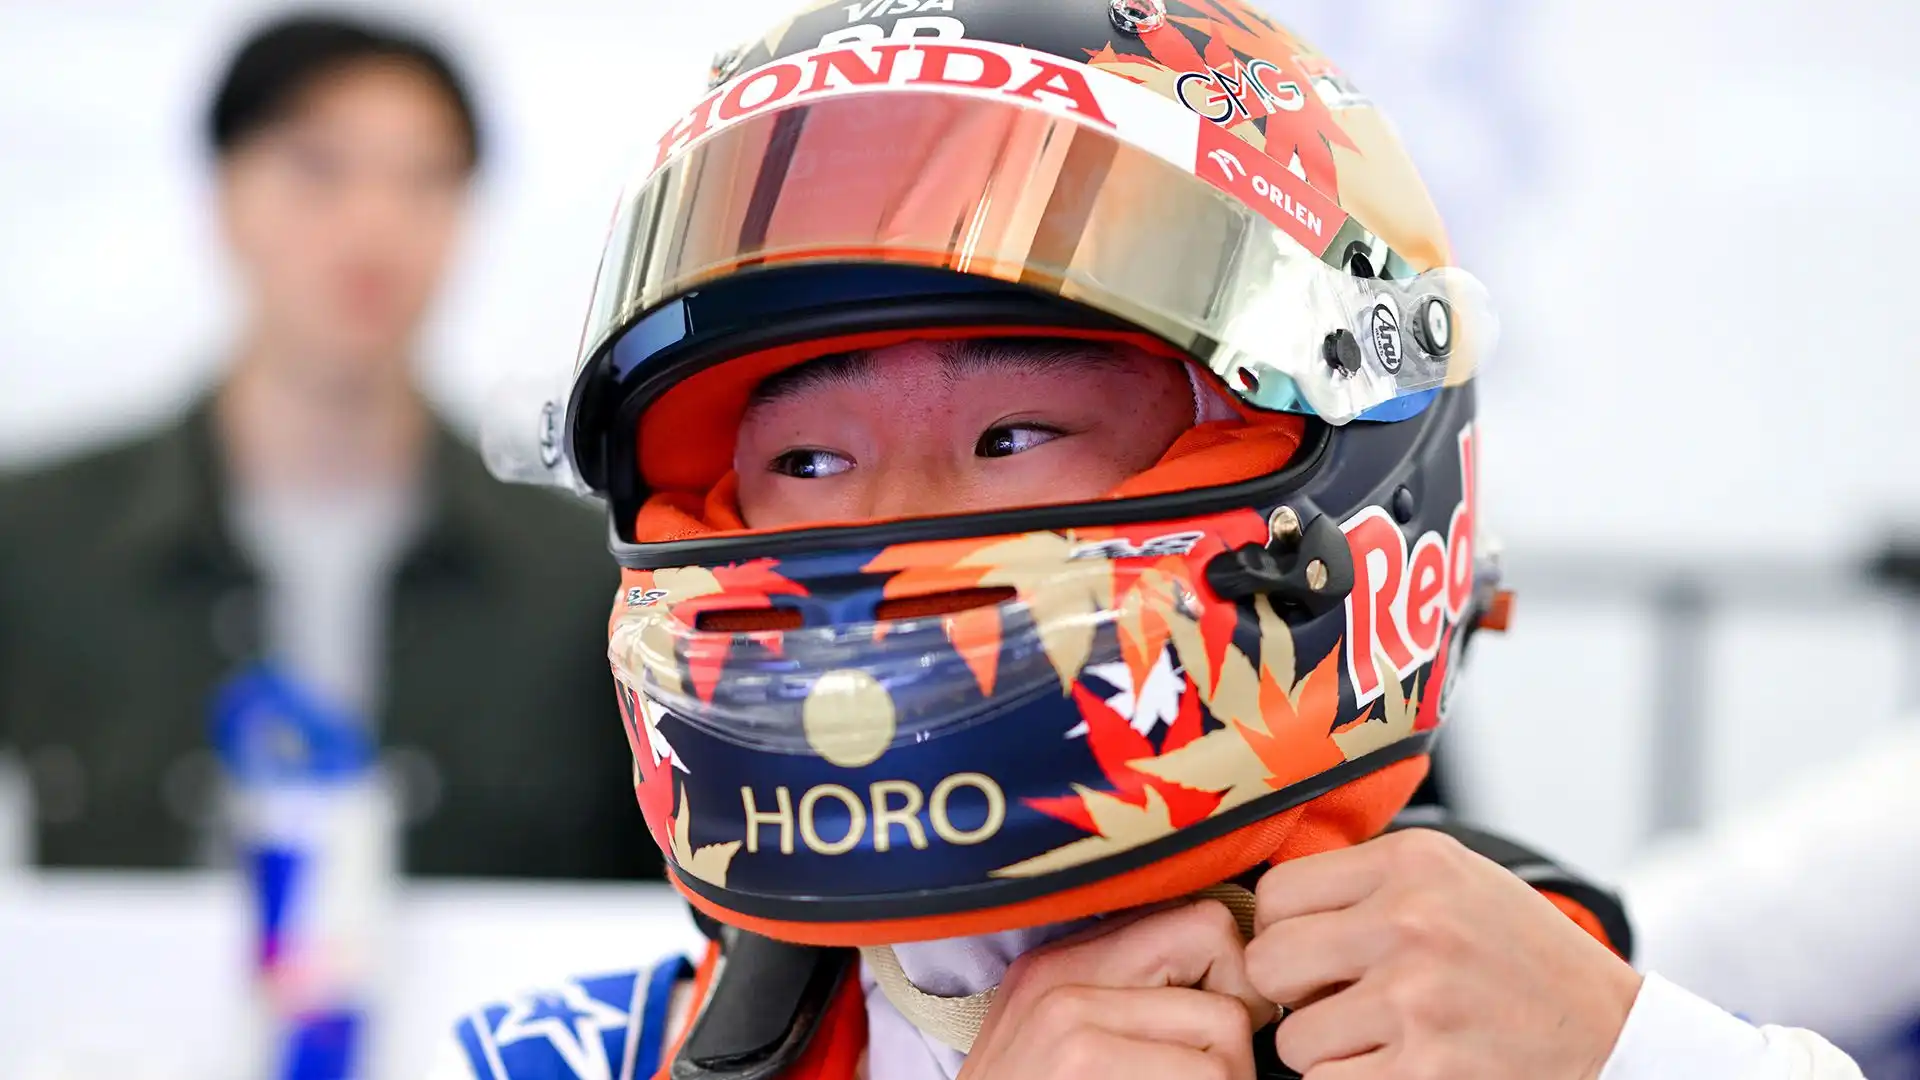 Secondo le voci, la Red Bull avrebbe intenzione di sostituire Tsunoda con Liam Lawson come pilota del team satellite nel 2025